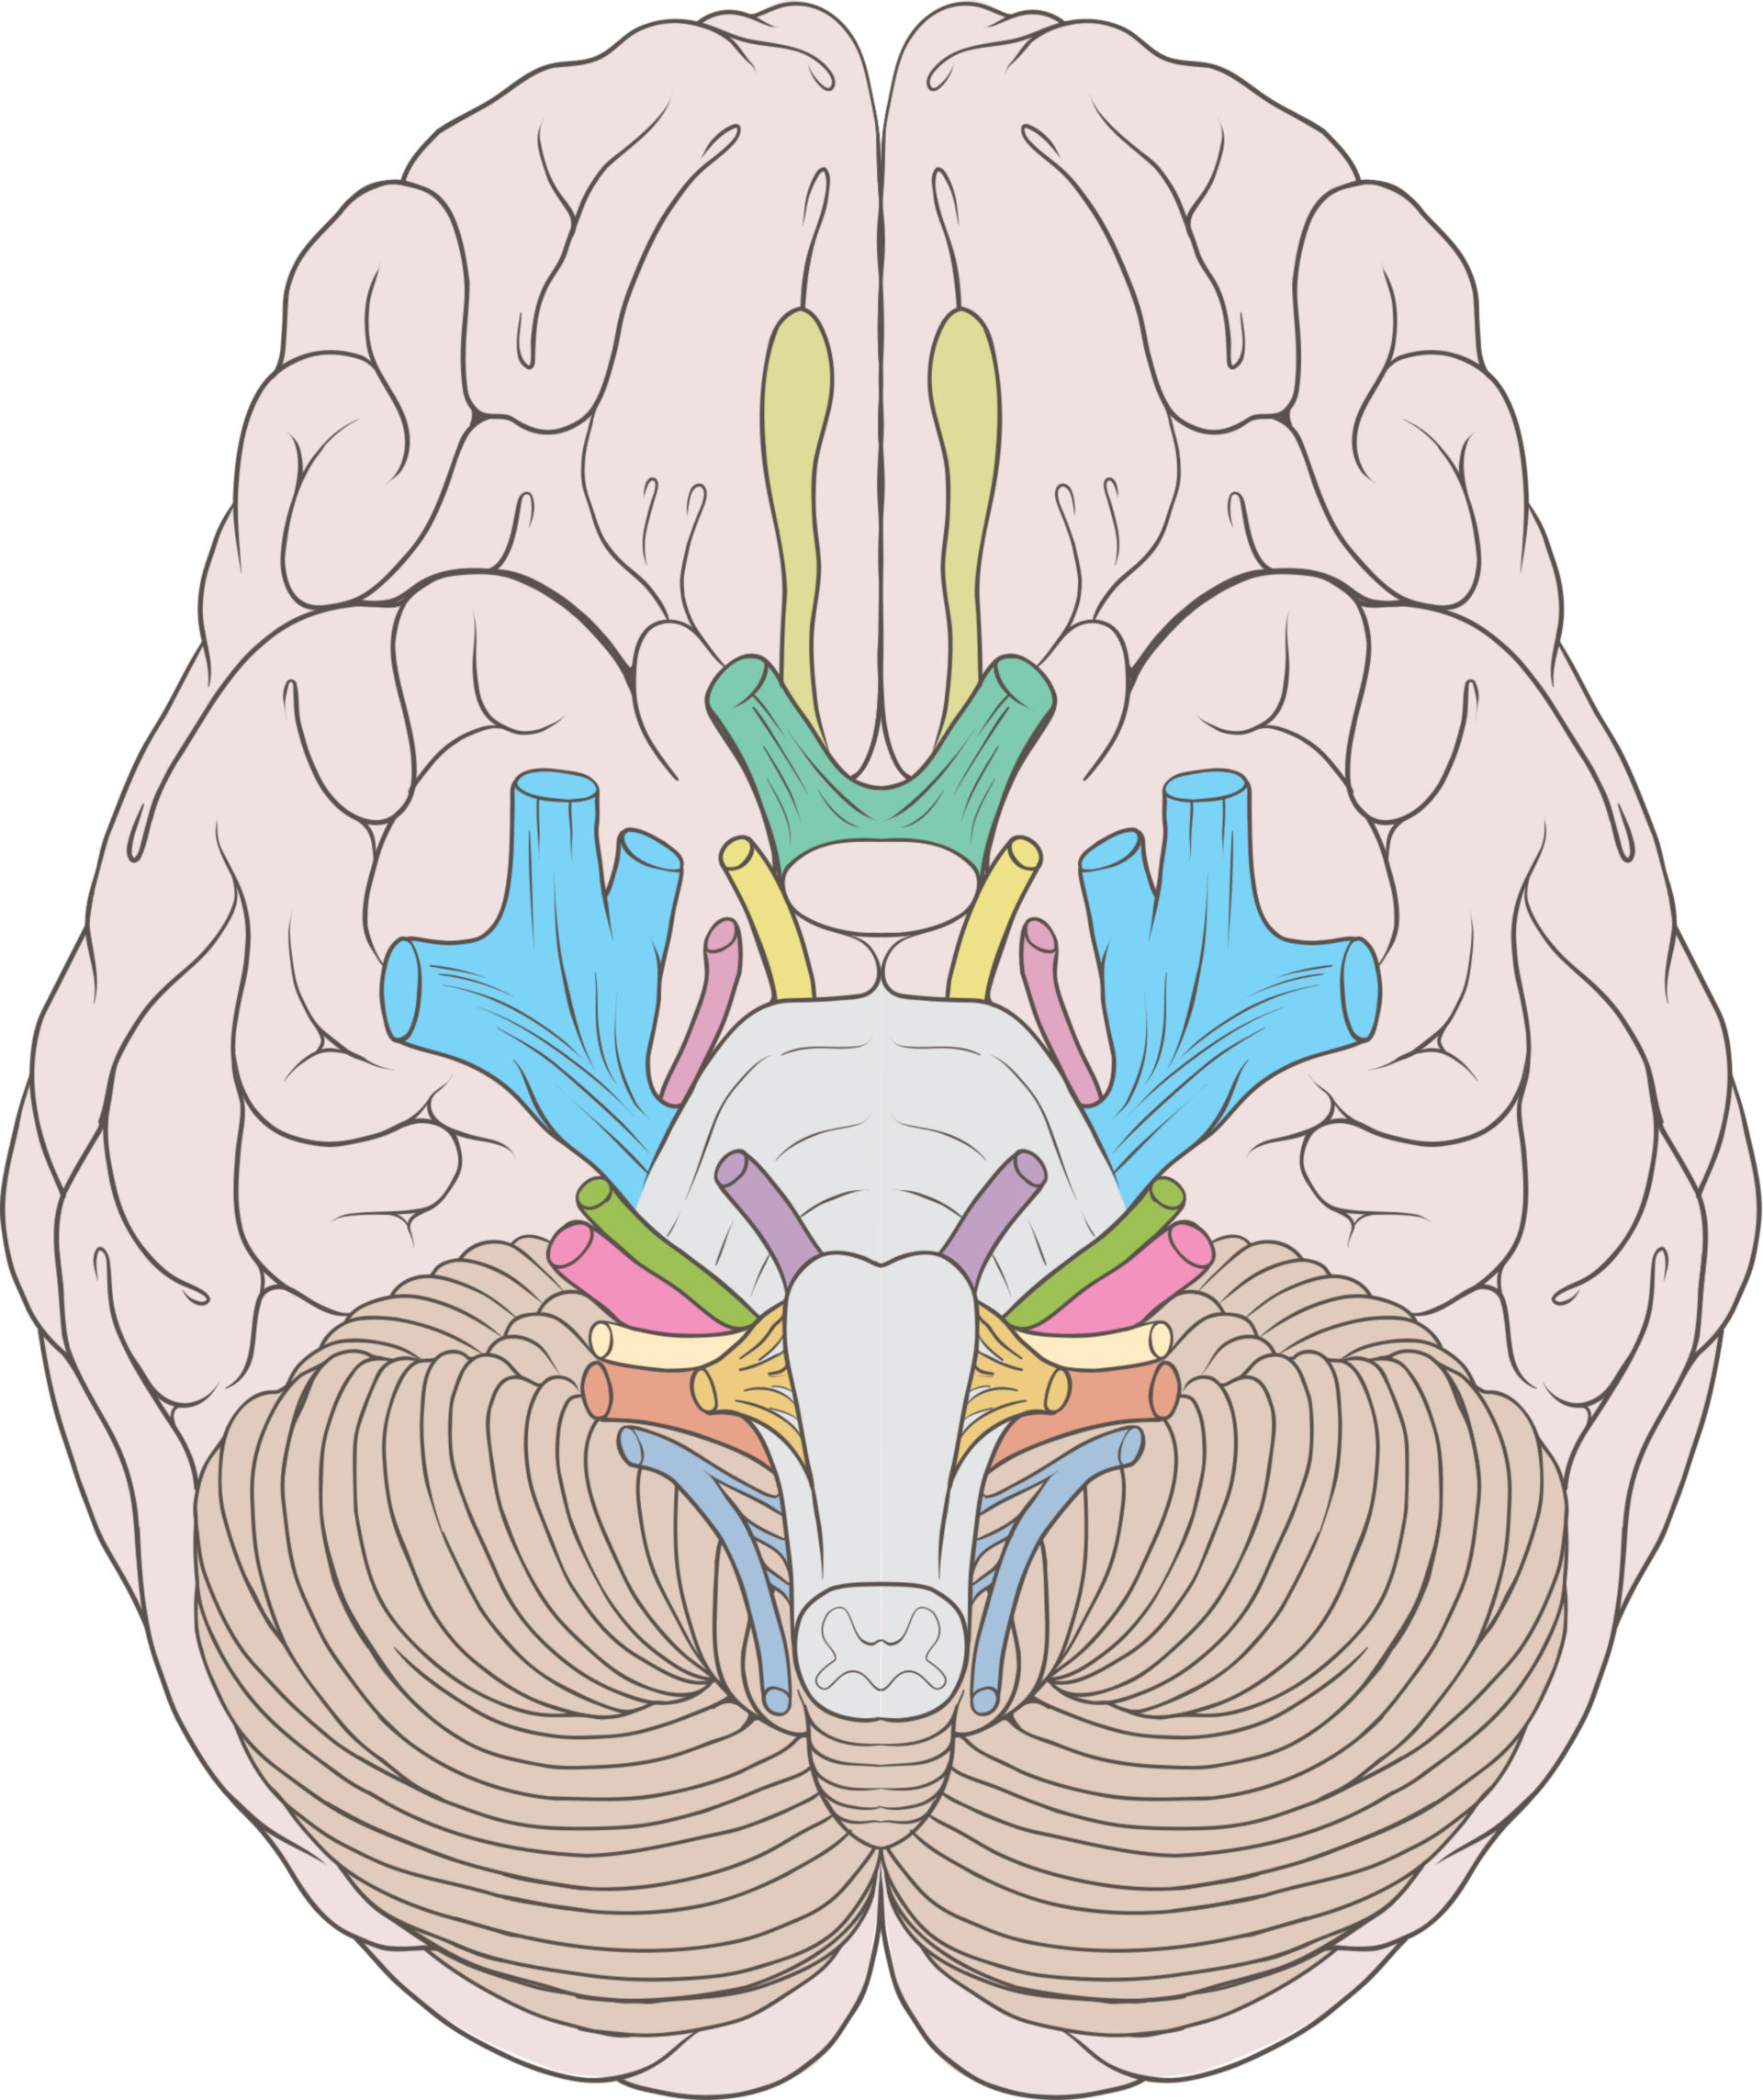 Nervios cerebrales (esquema)